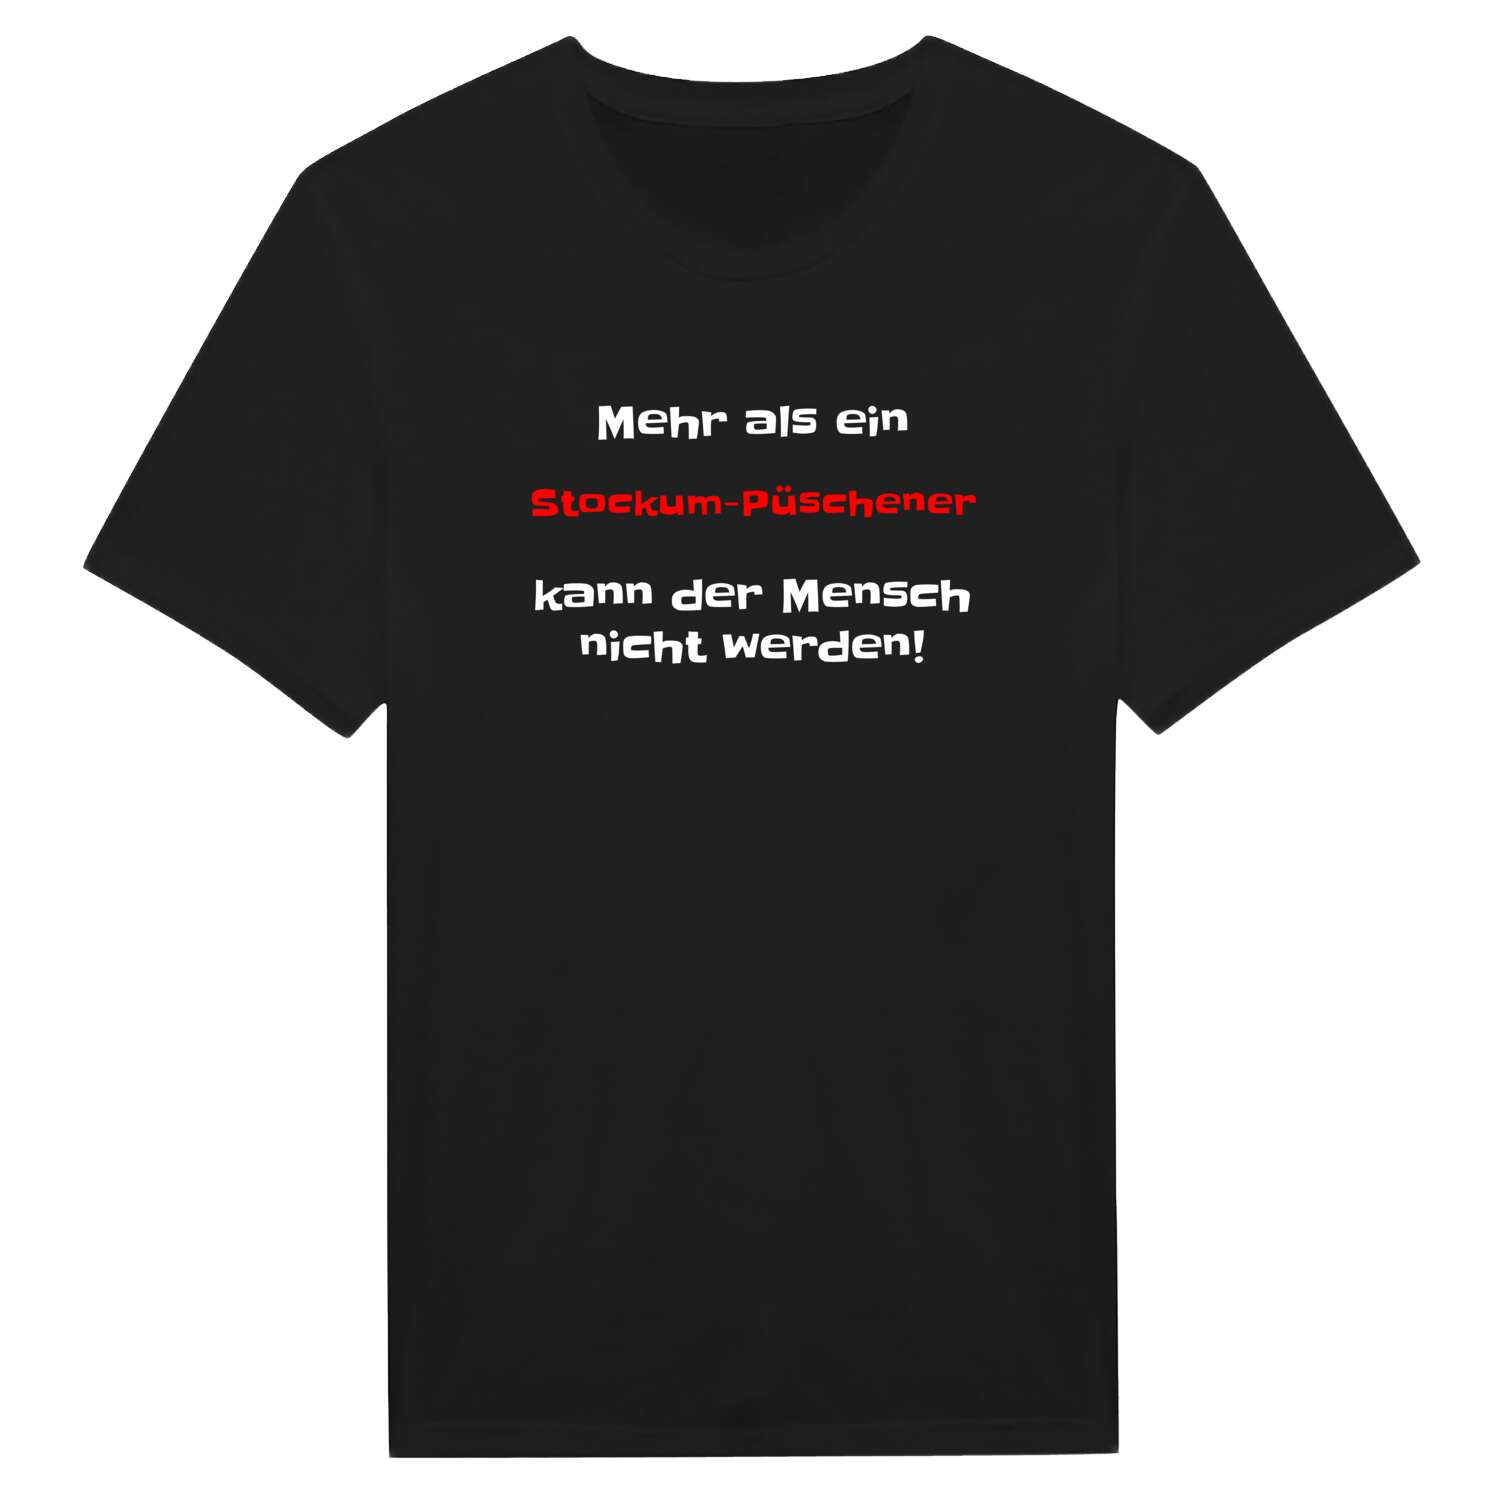 Stockum-Püschen T-Shirt »Mehr als ein«